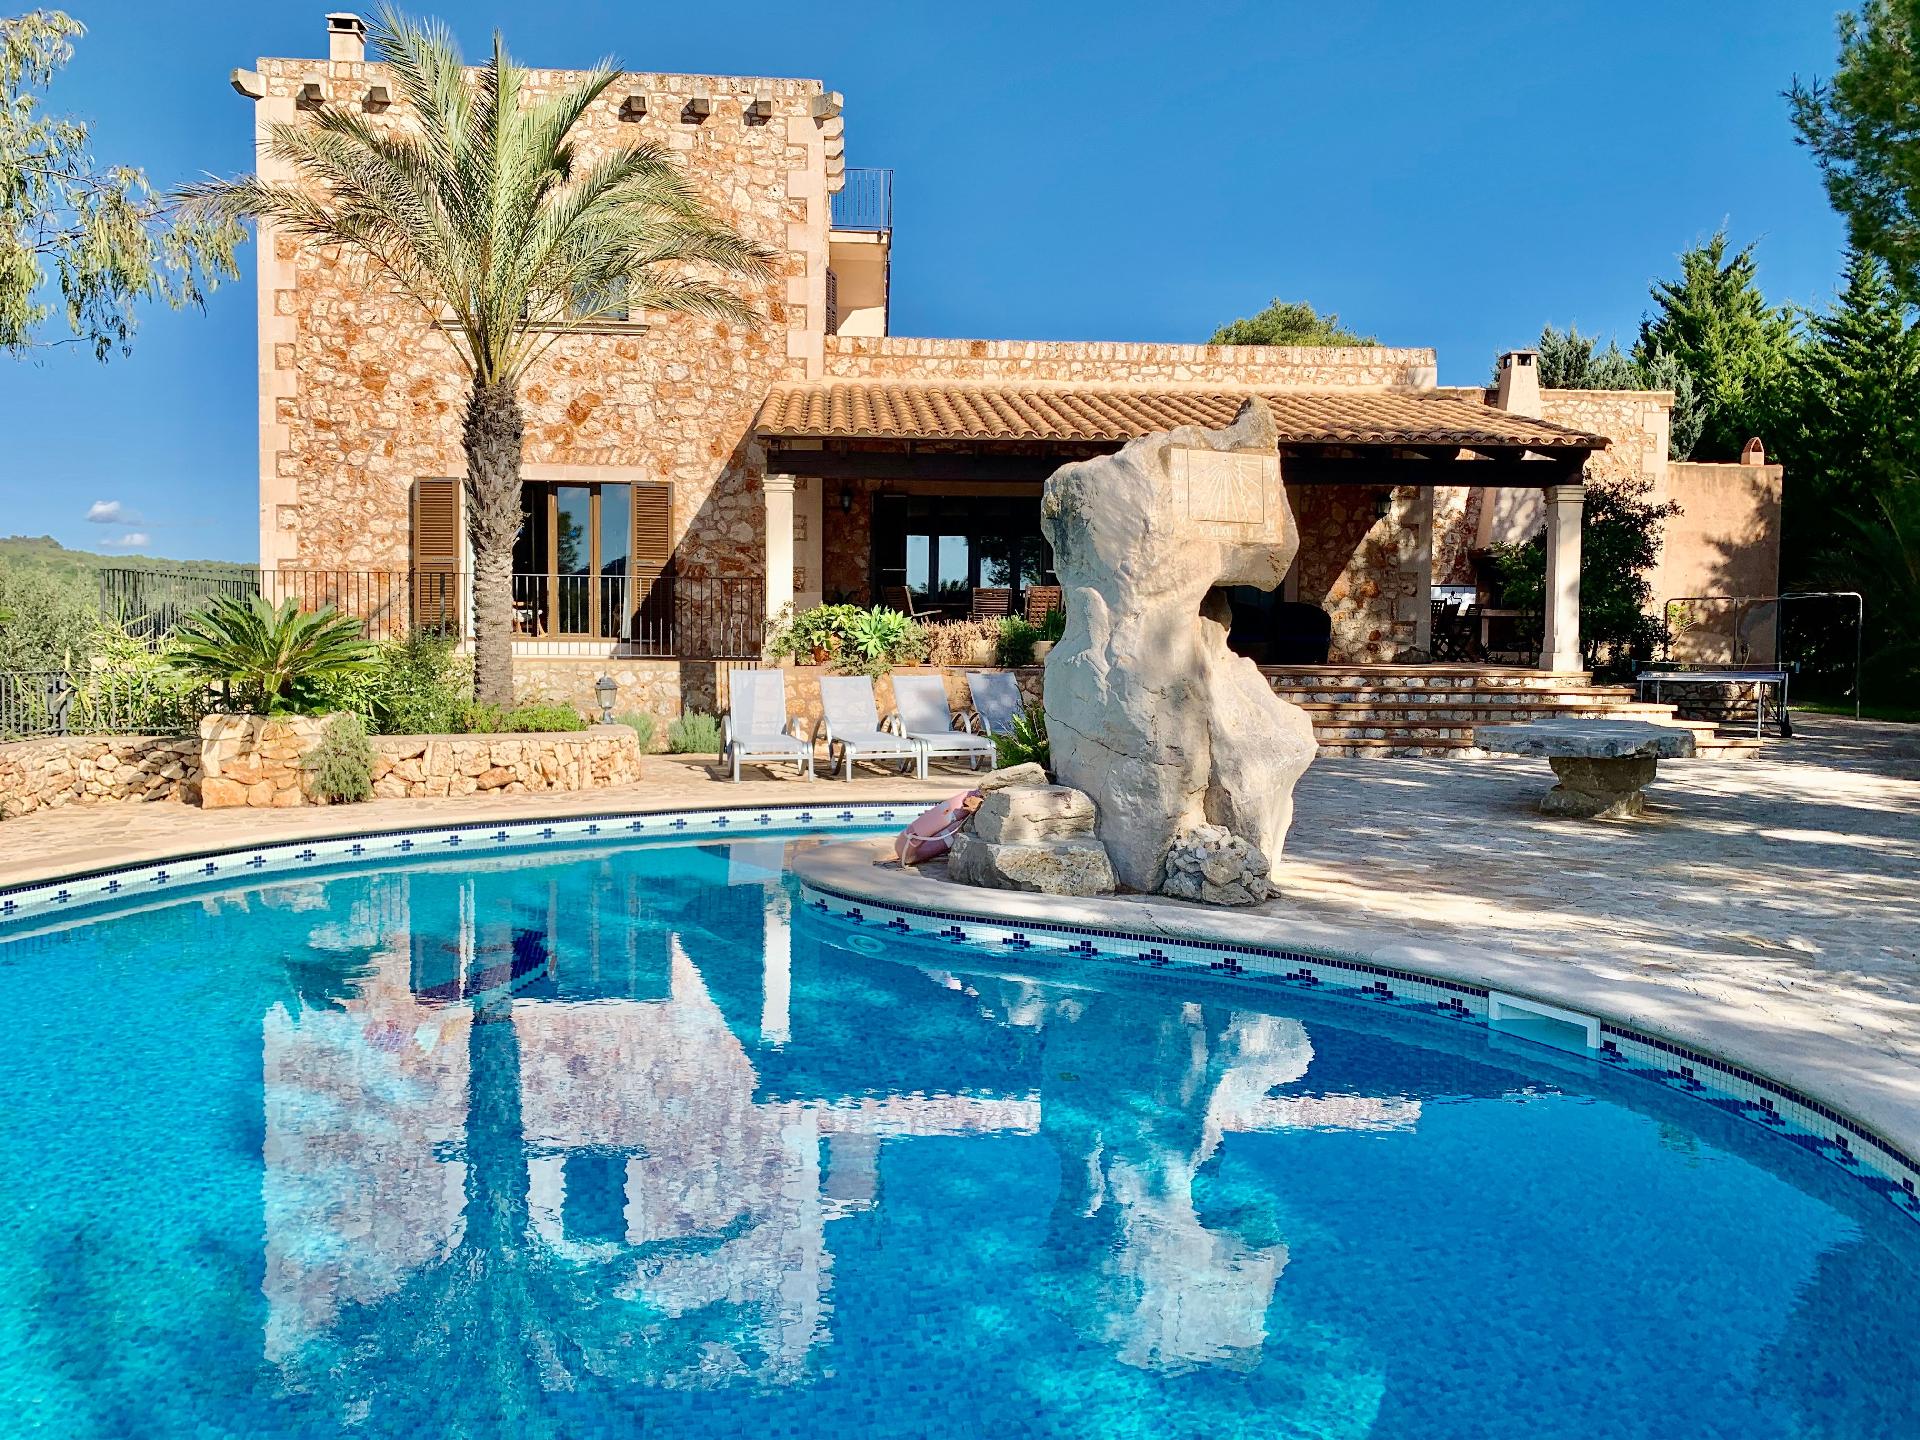 Ferienhaus mit Privatpool für 10 Personen ca. Ferienhaus in Spanien